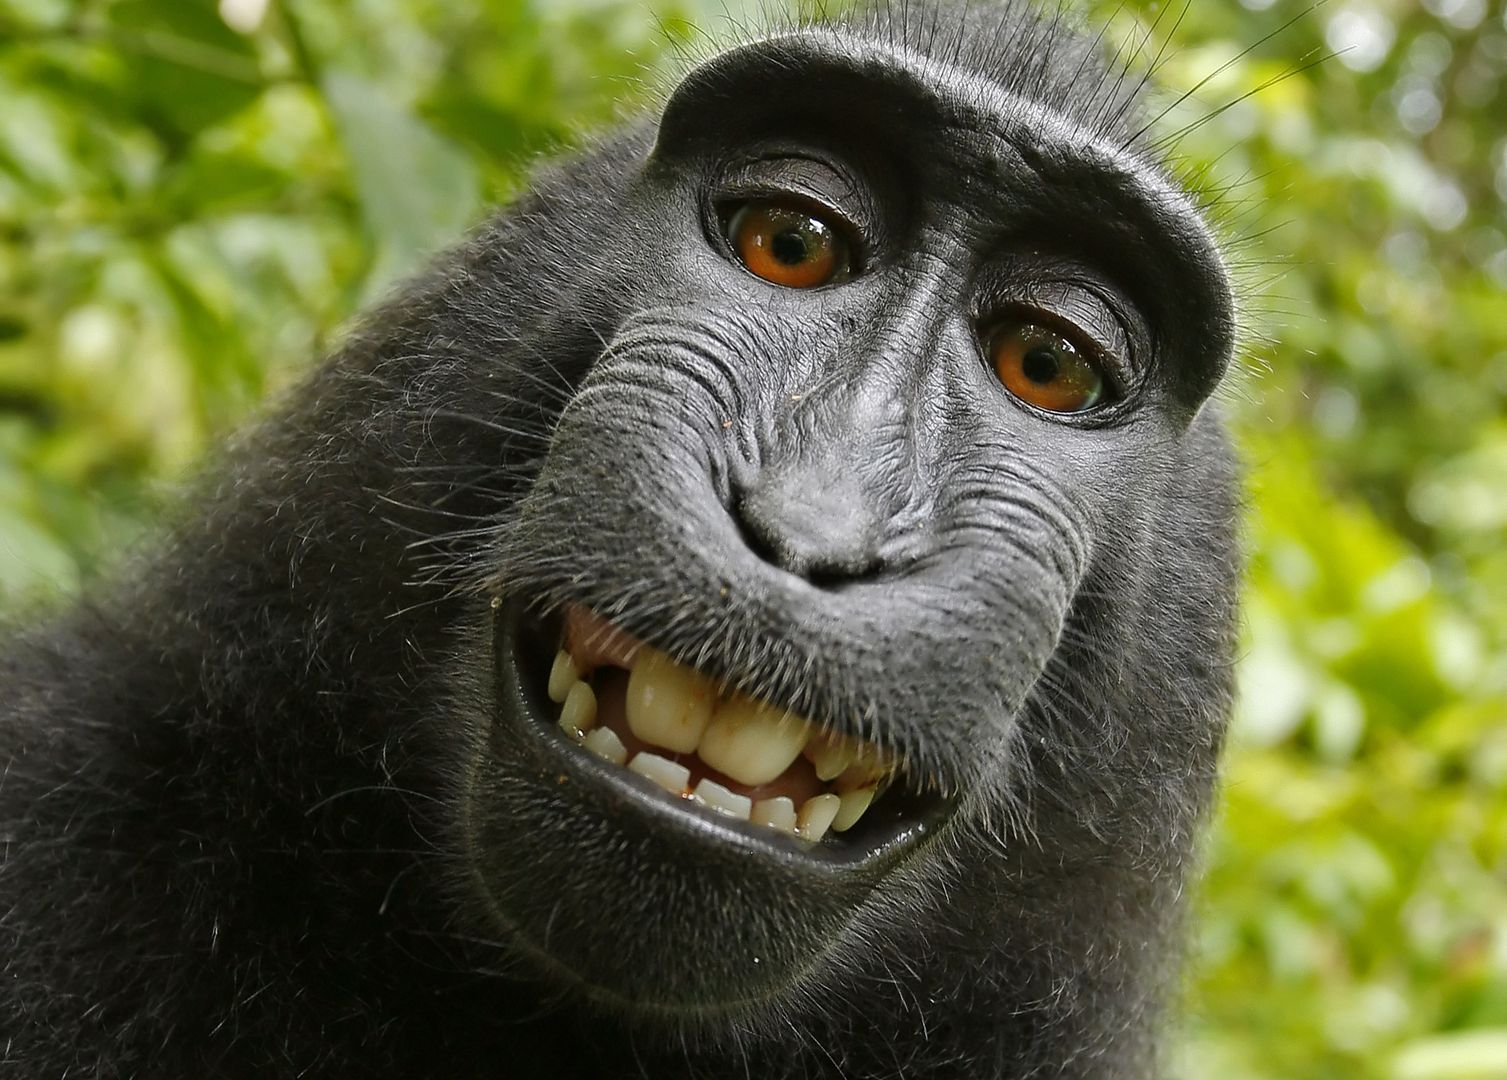 Sąd zadecydował: małpa nie może posiadać praw autorskich